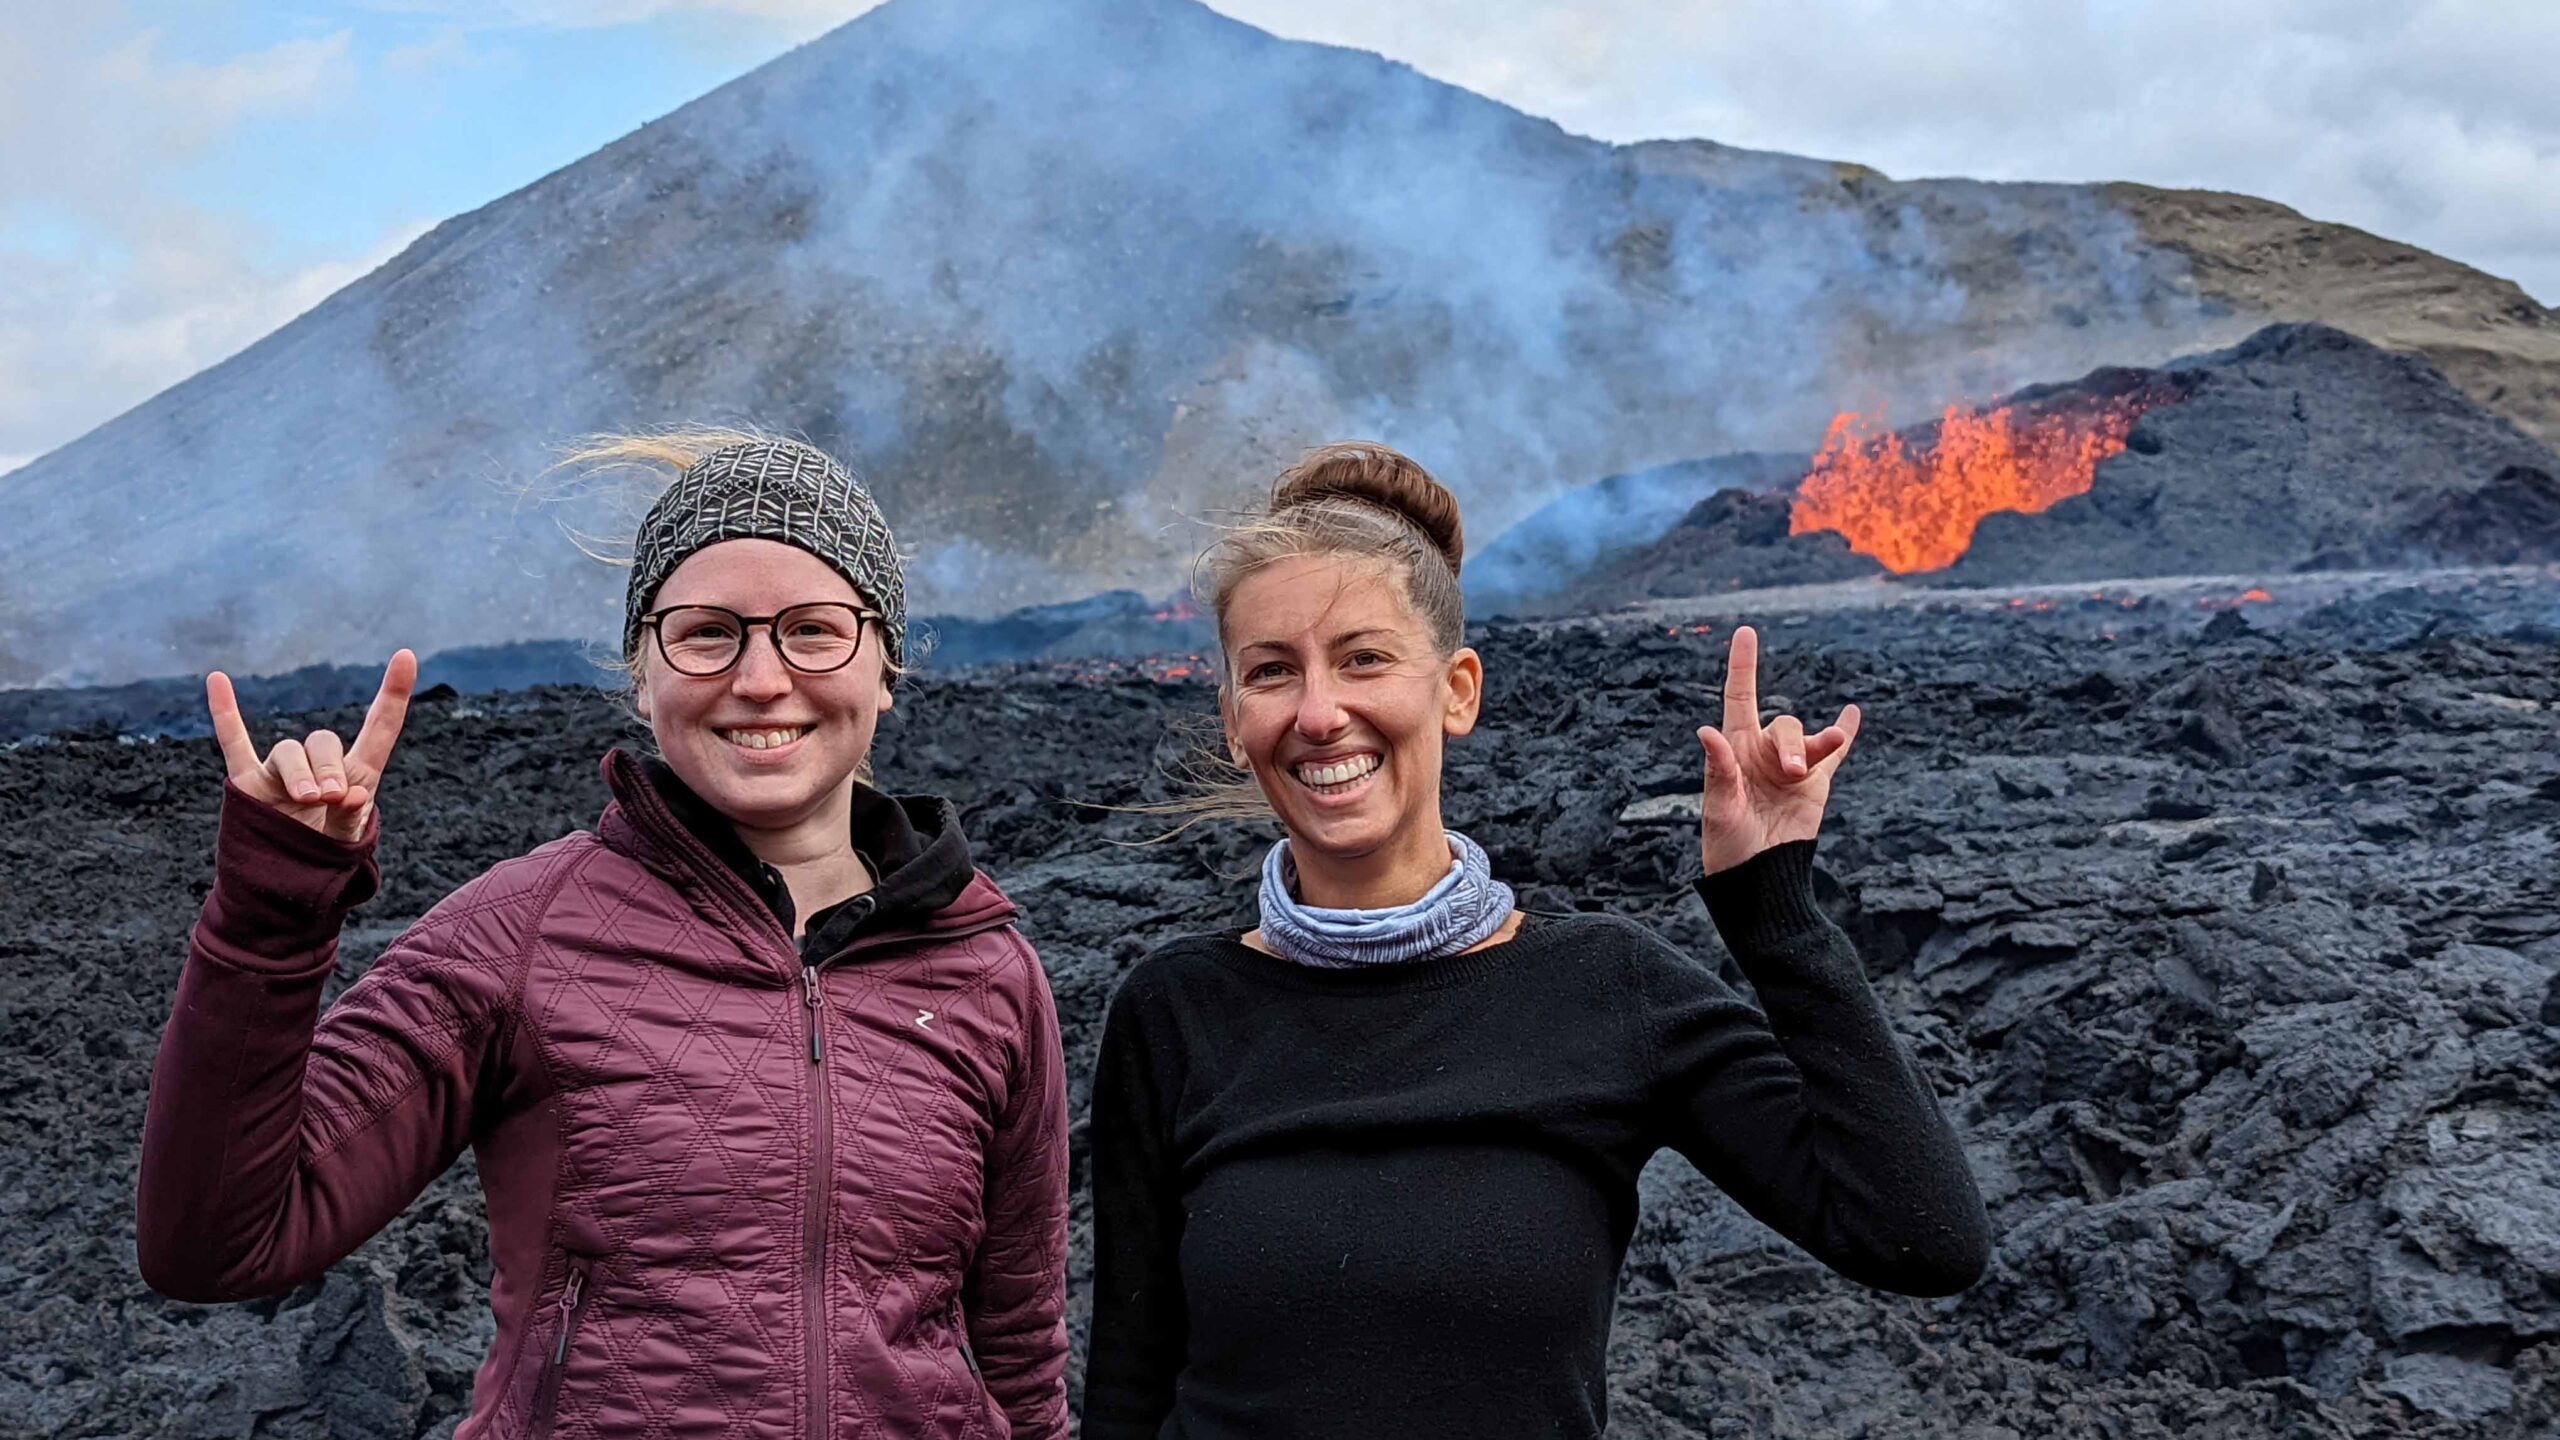 Soldati & student at Icelandic volcano eruption